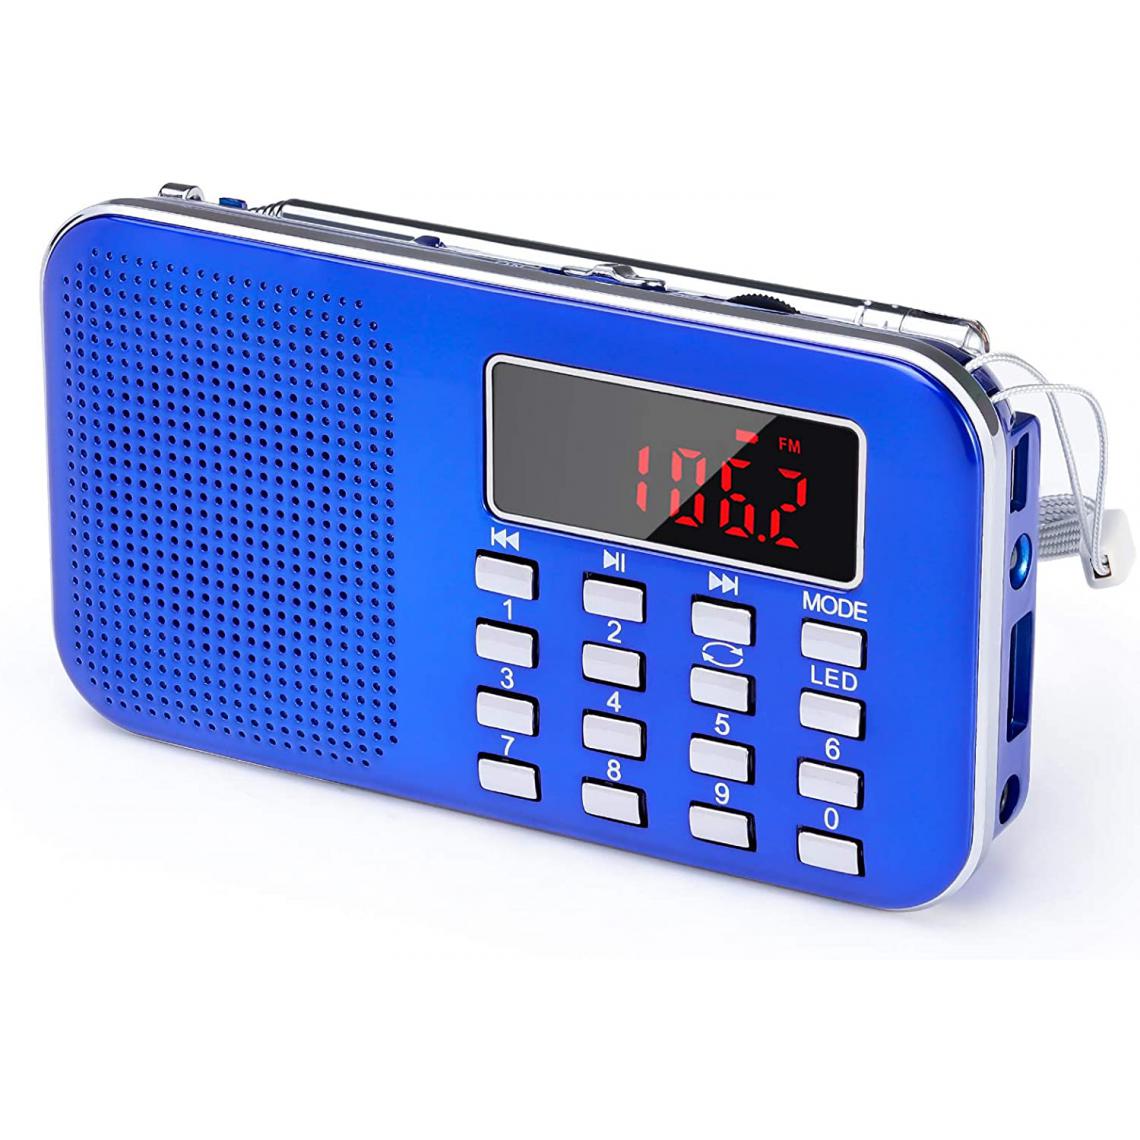 Prunus - radio portable AM / FM / SD / AUX / USB avec batterie rechargeable de 1200 mAh bleu gris - Radio